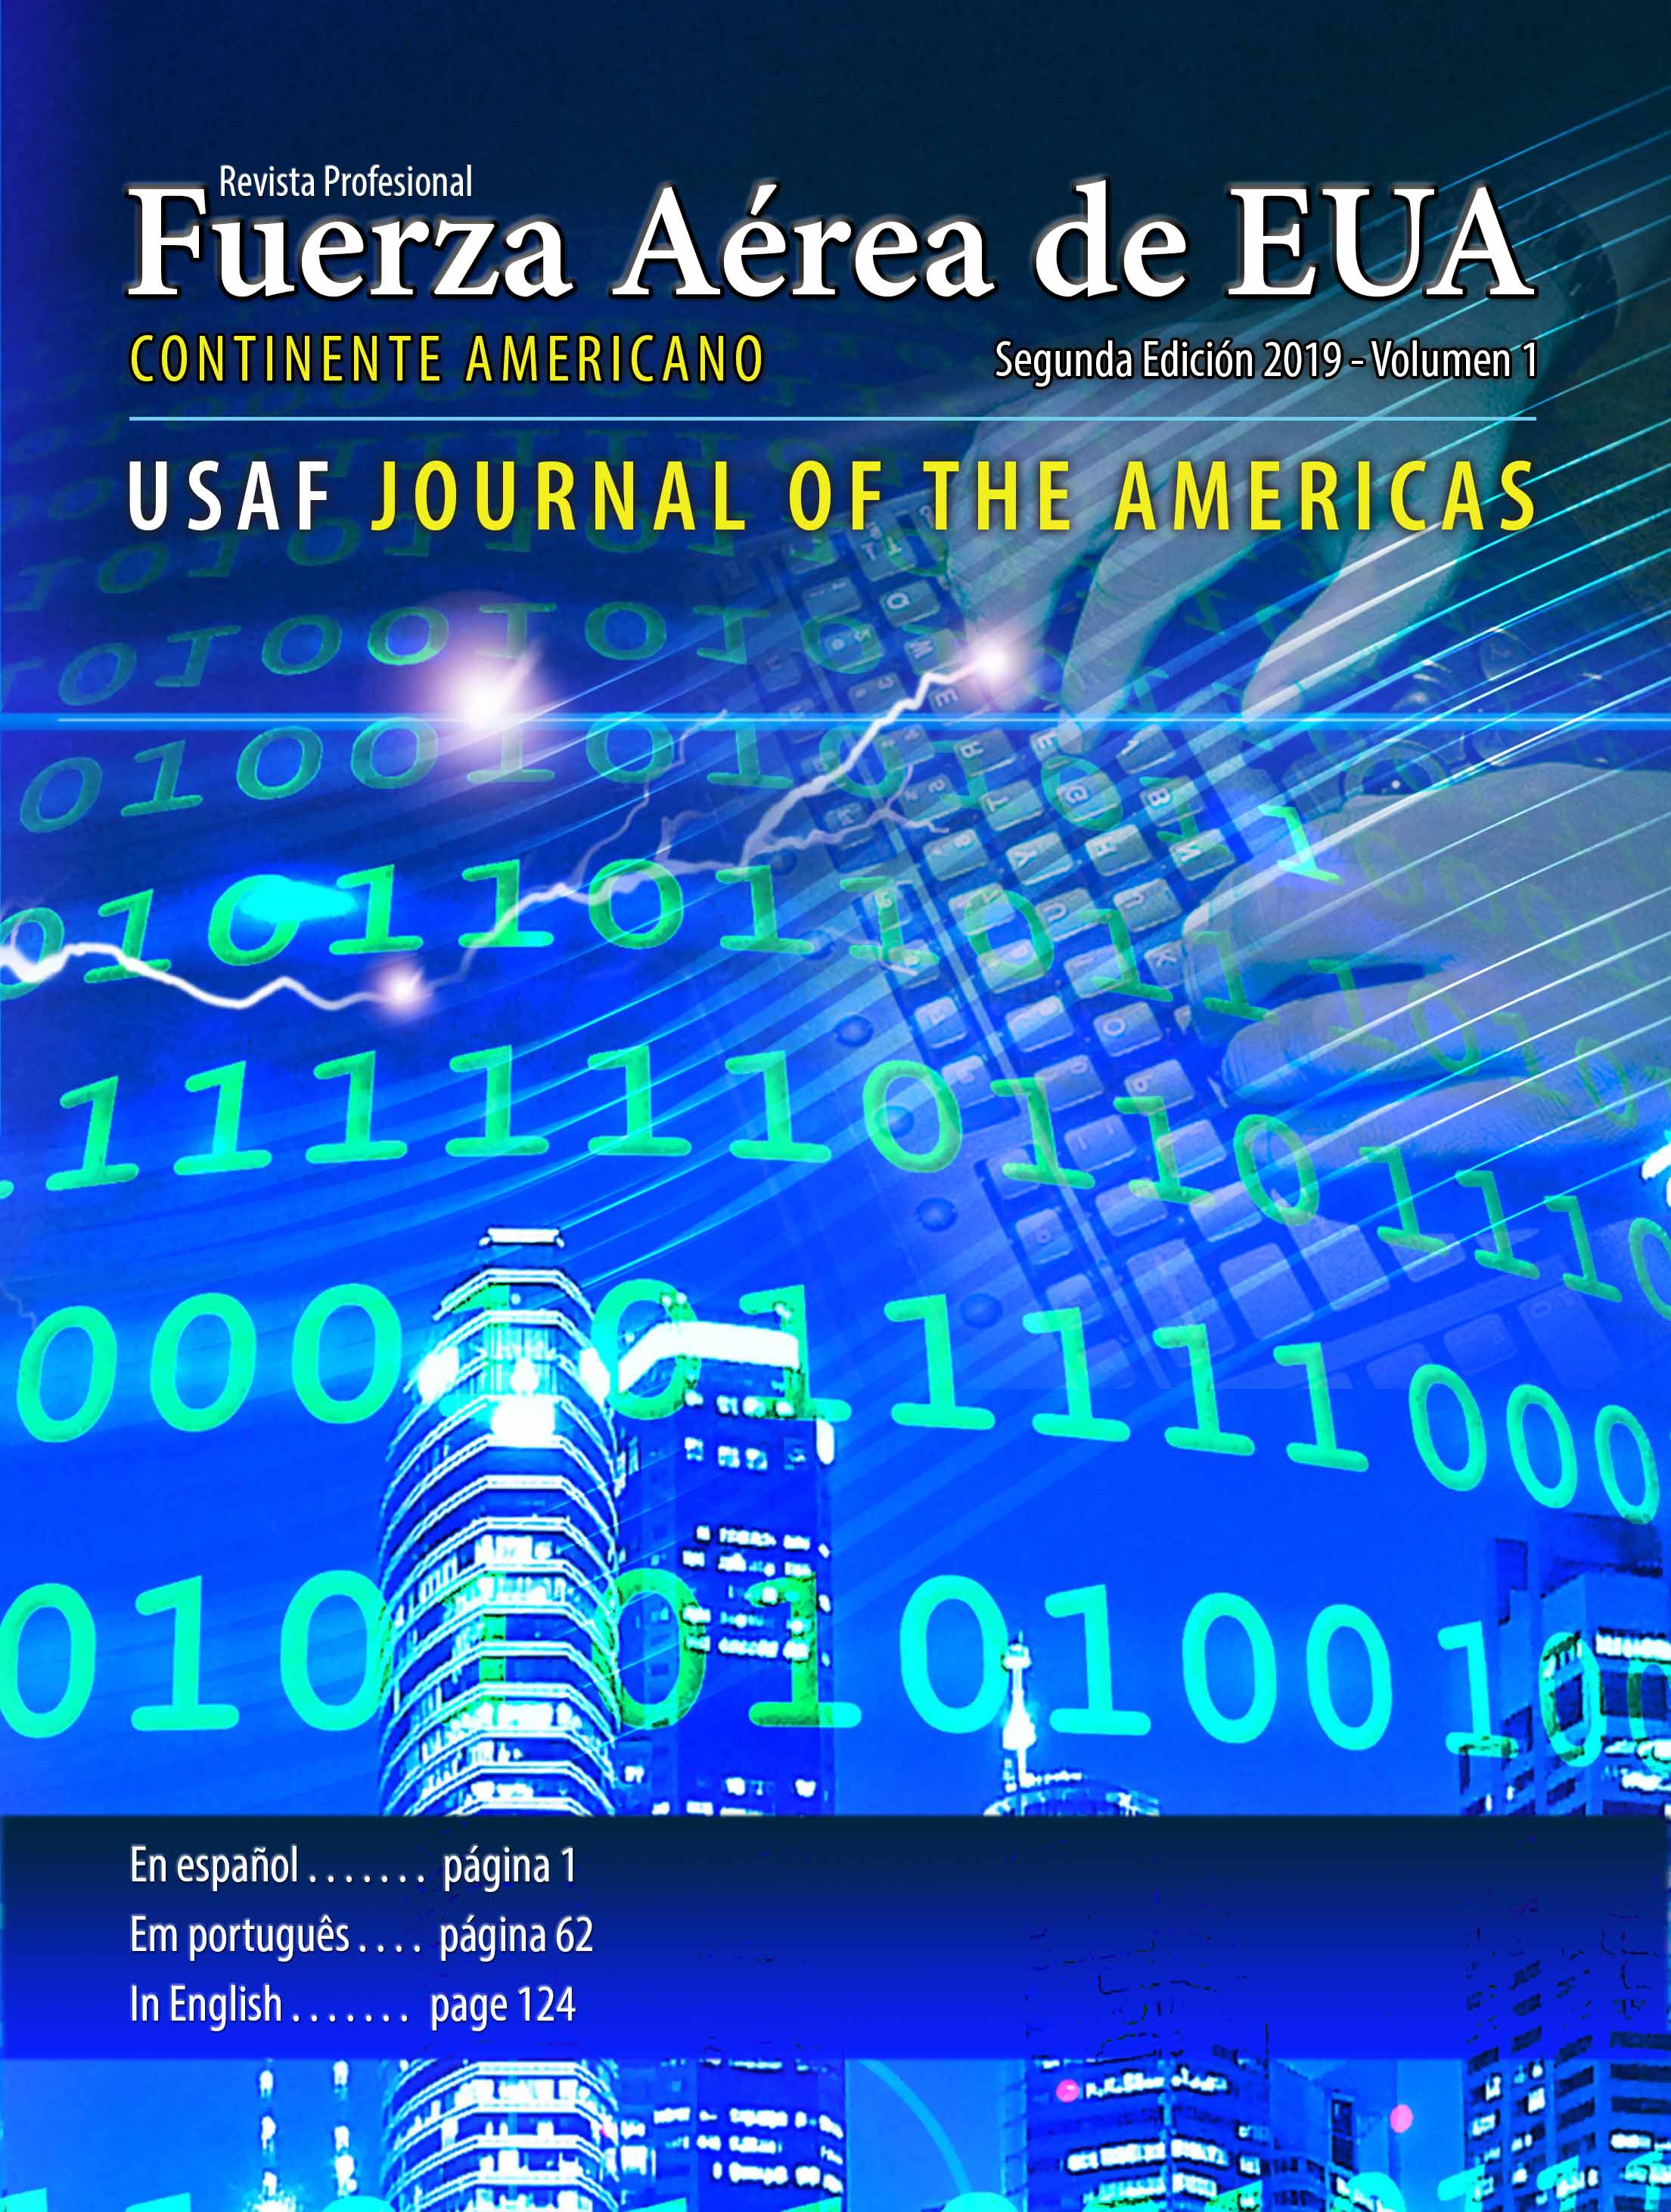 Revista Profissional da Força Aérea dos EUA - Continente Americano 2019-2